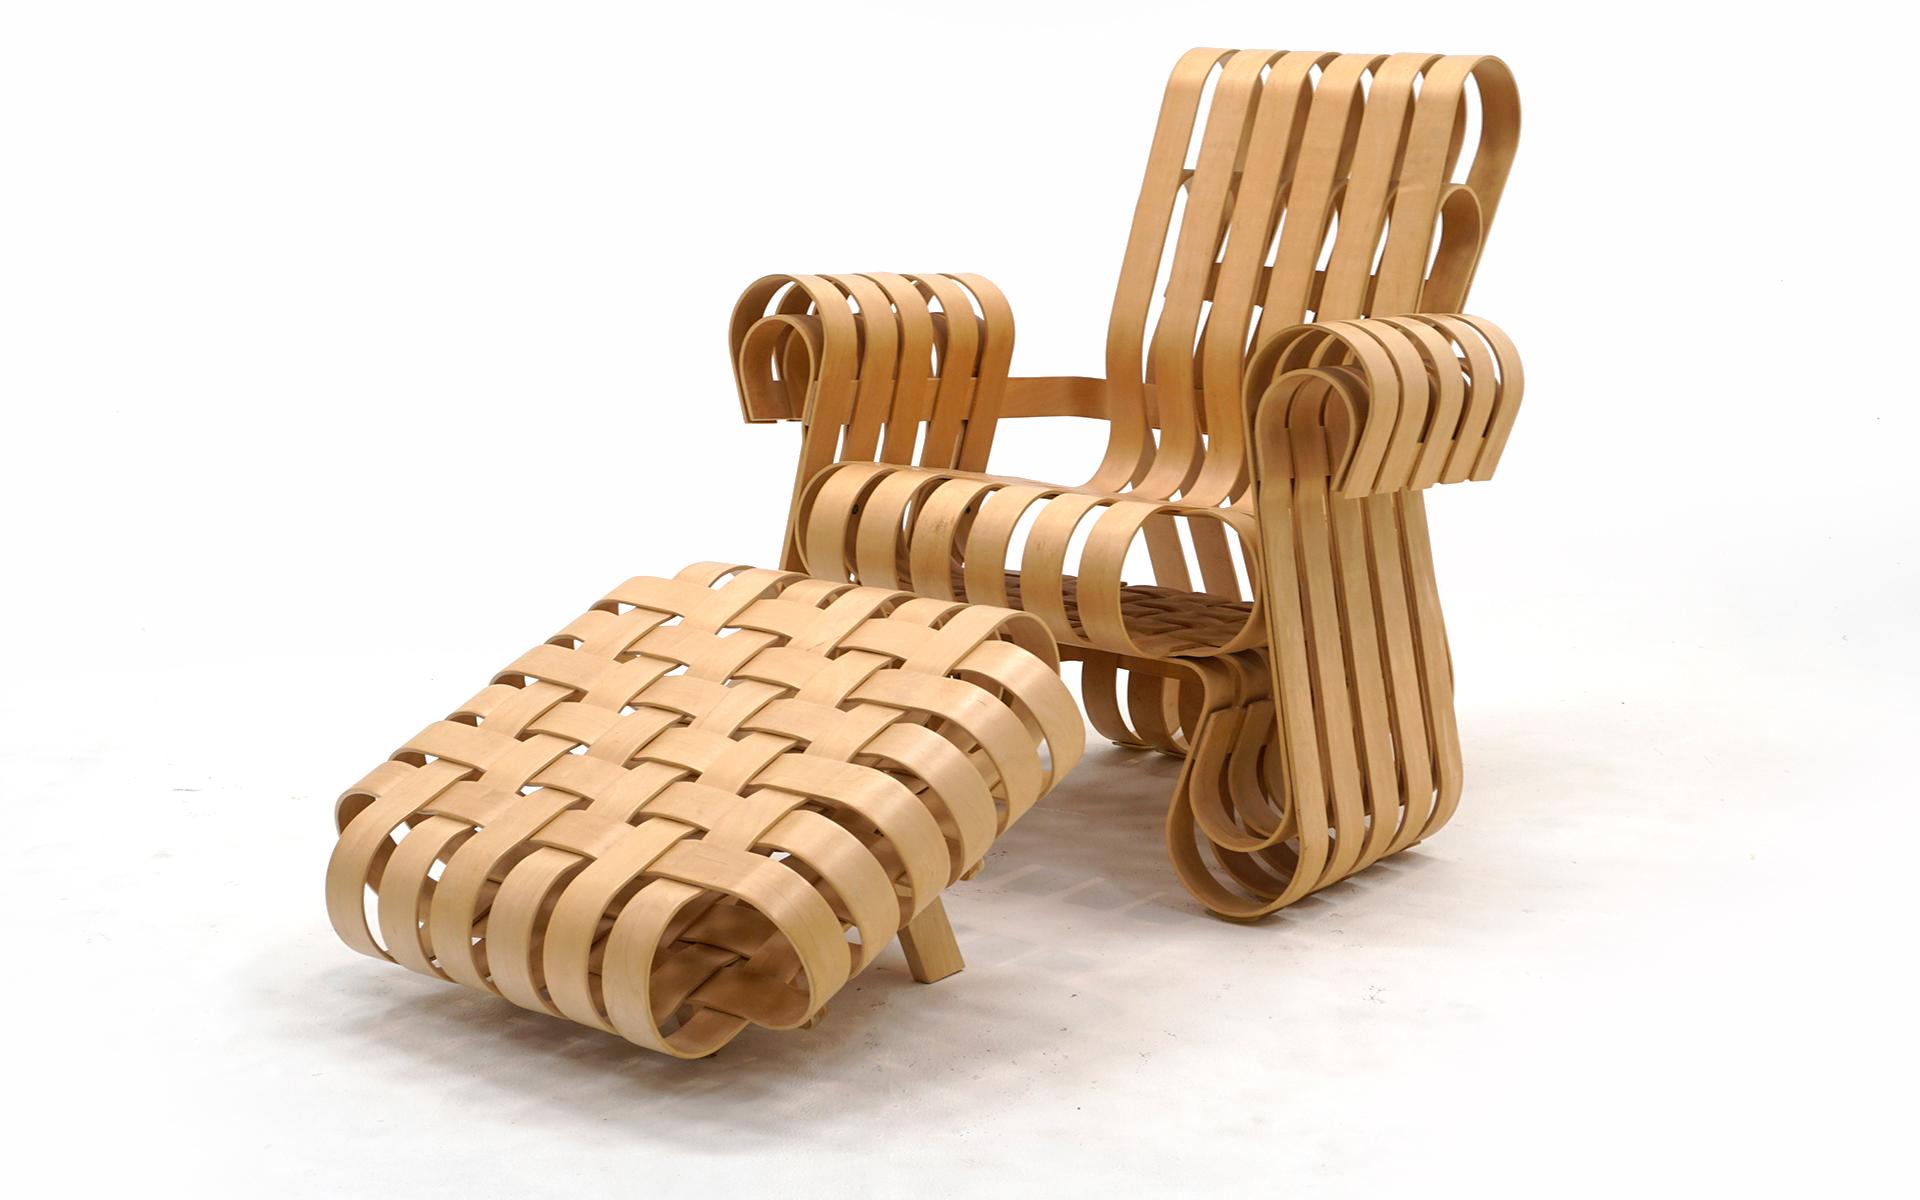 Power play Stuhl und Ottomane, entworfen von Frank Gehry für Knoll, in fast neuwertigem Zustand. Die Holzlatten weisen keine Abplatzungen, Risse oder Reparaturen auf. Wenig bis gar keine Gebrauchsspuren. Dieses Set wird neu für 14.000 $ plus